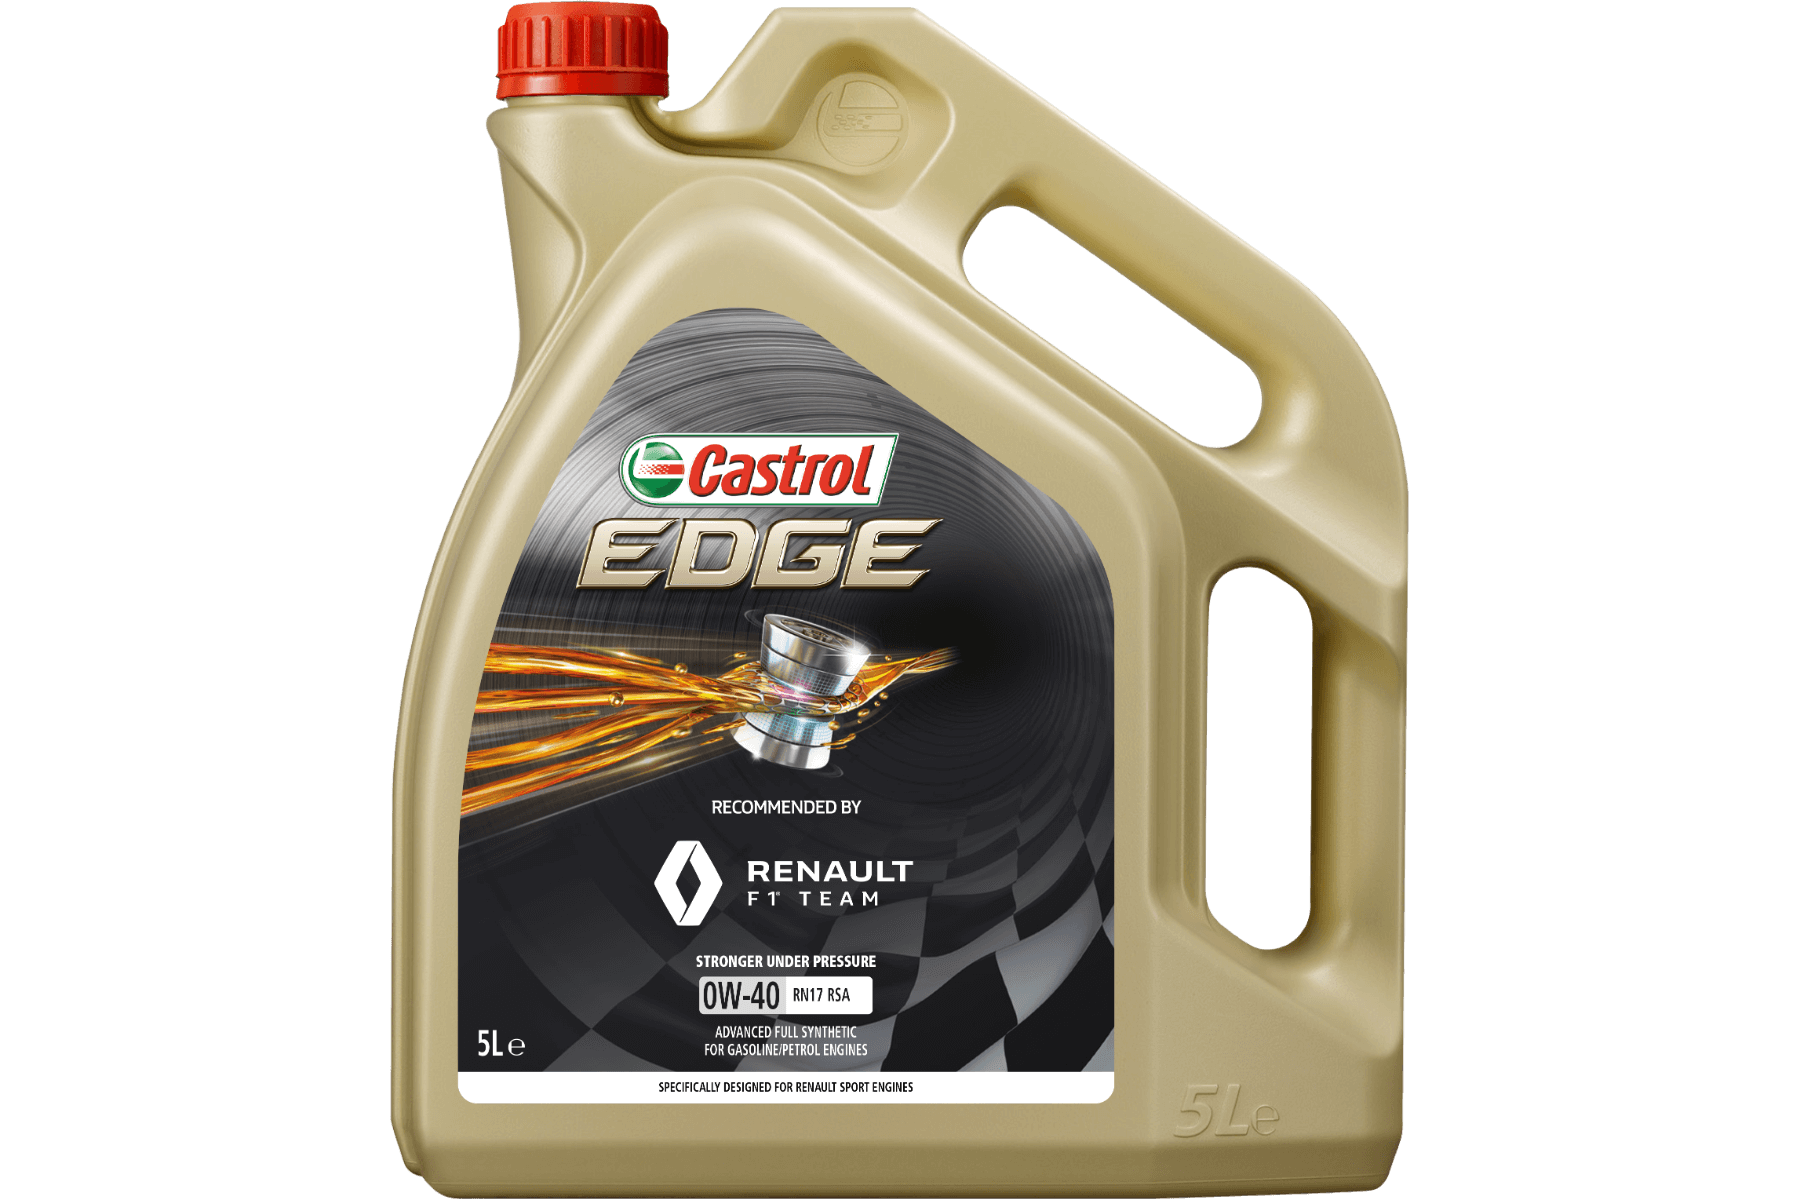 castrol-edge-0w40-rn17-rsa-engine-oil-5l-0_1.png